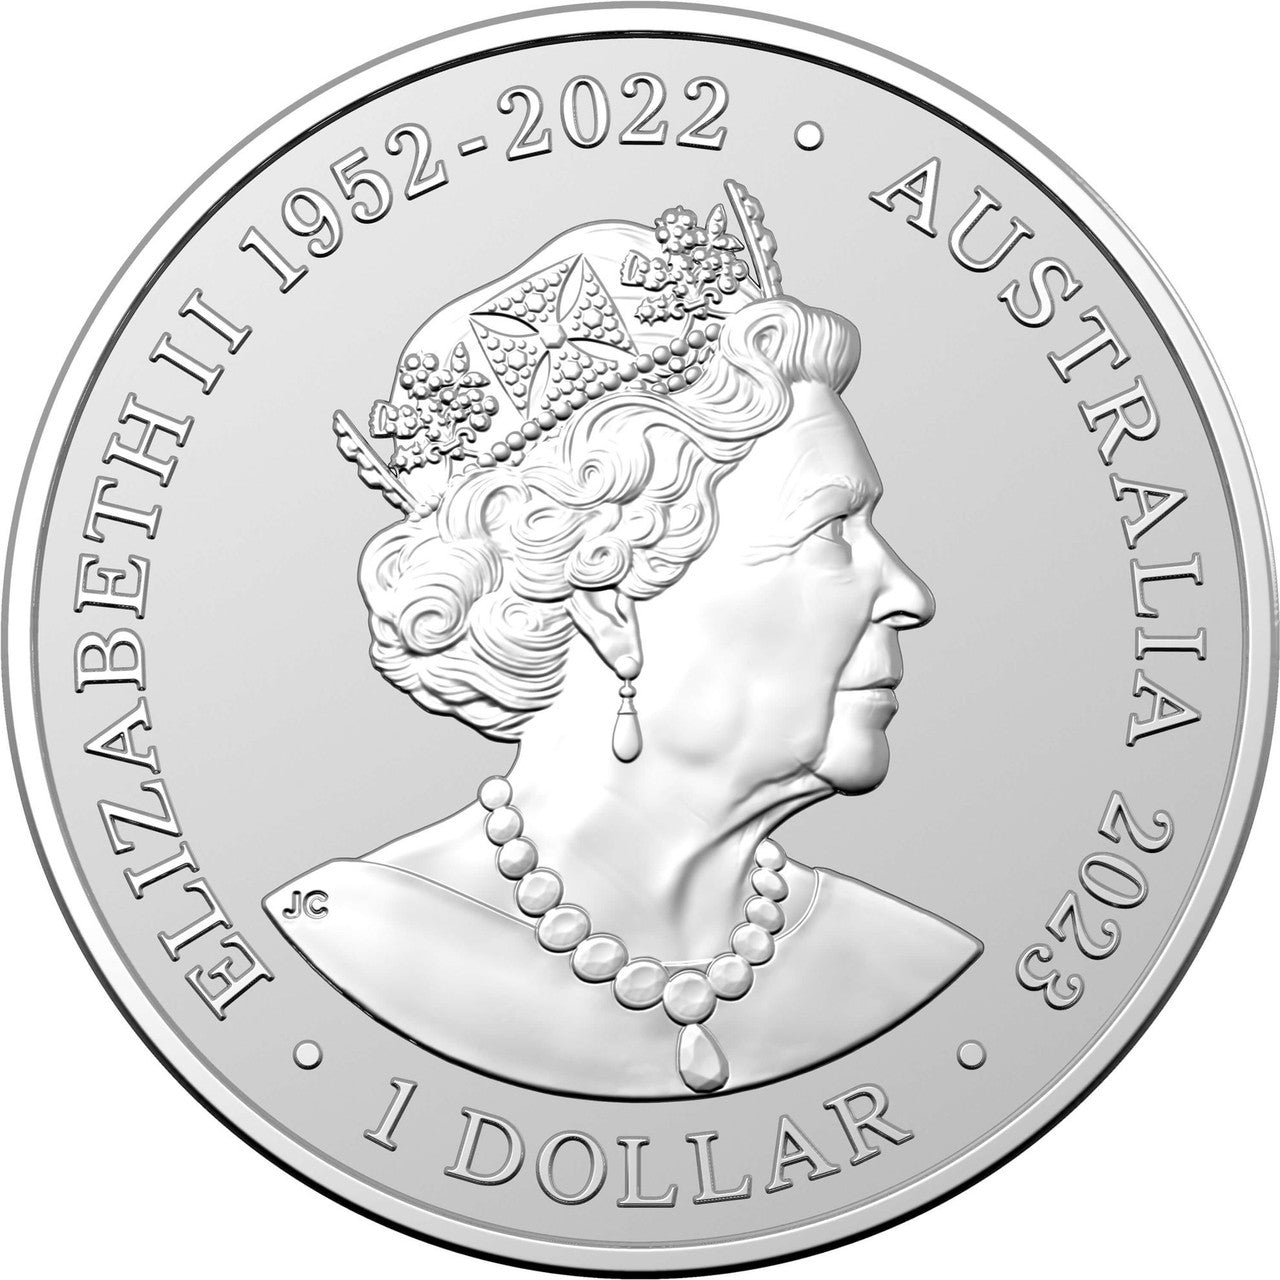 Royal Australian Mint 2023 1oz .999 Silver BU Coin - Southern White Rhinoceros